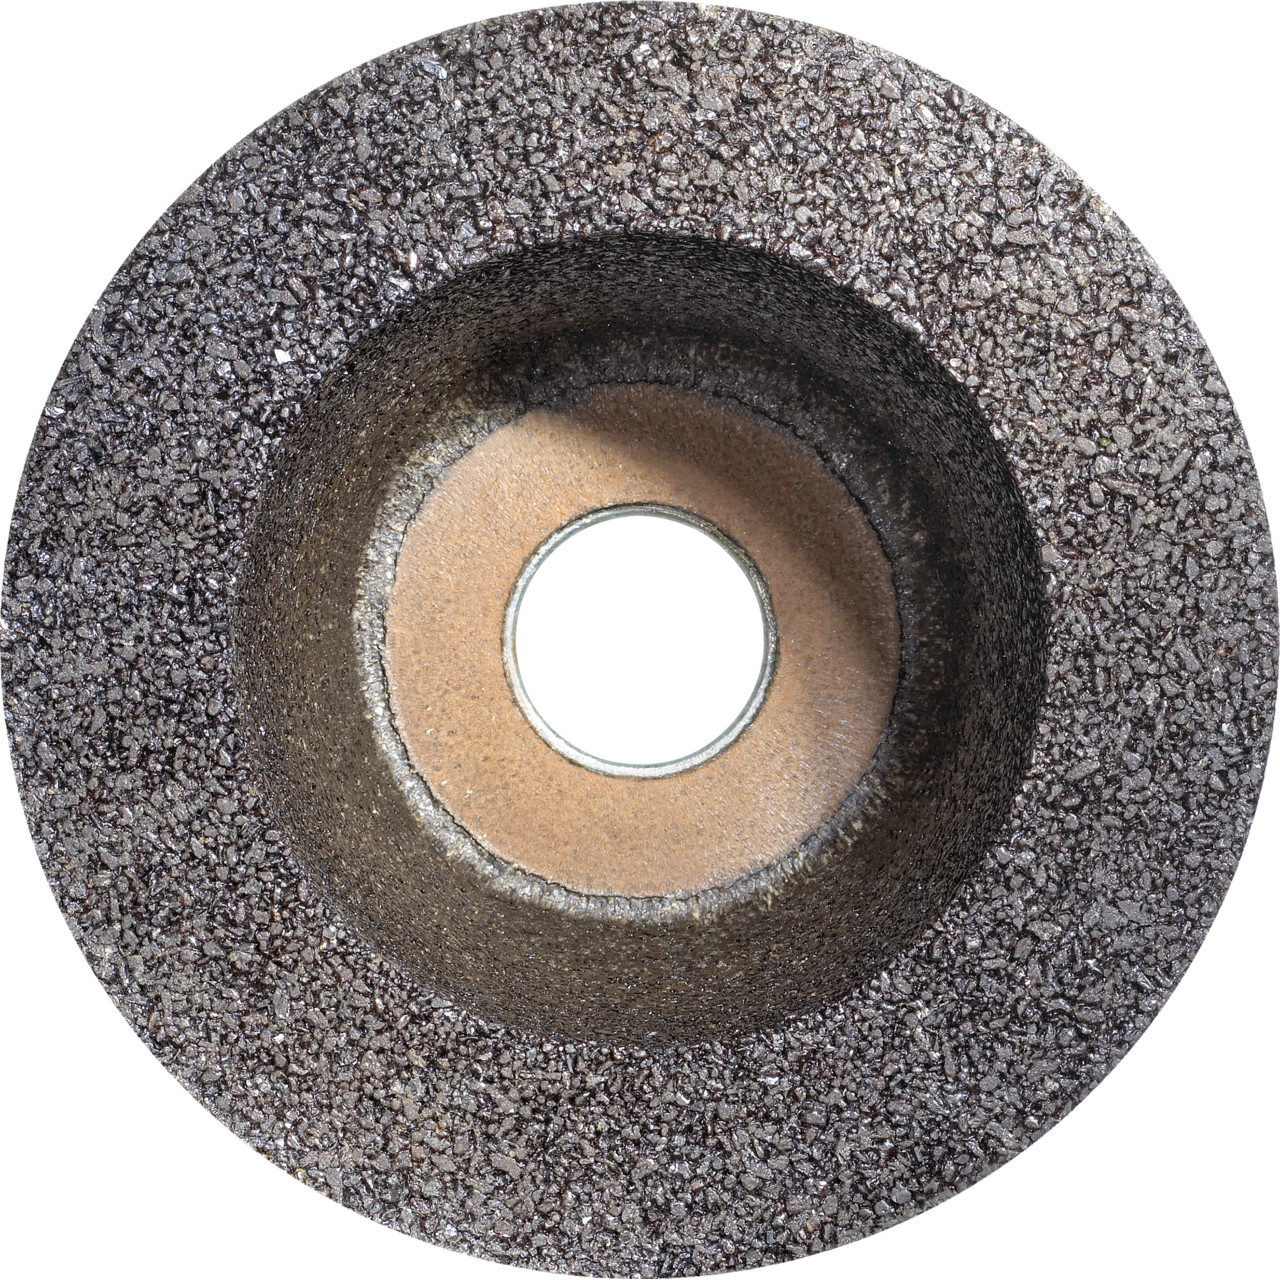 TYROLIT Pot en résine synthétique D/JxPxH 110/90x55x22,2 Pour la pierre, forme : 11BT Pot à meuler, art. 895670